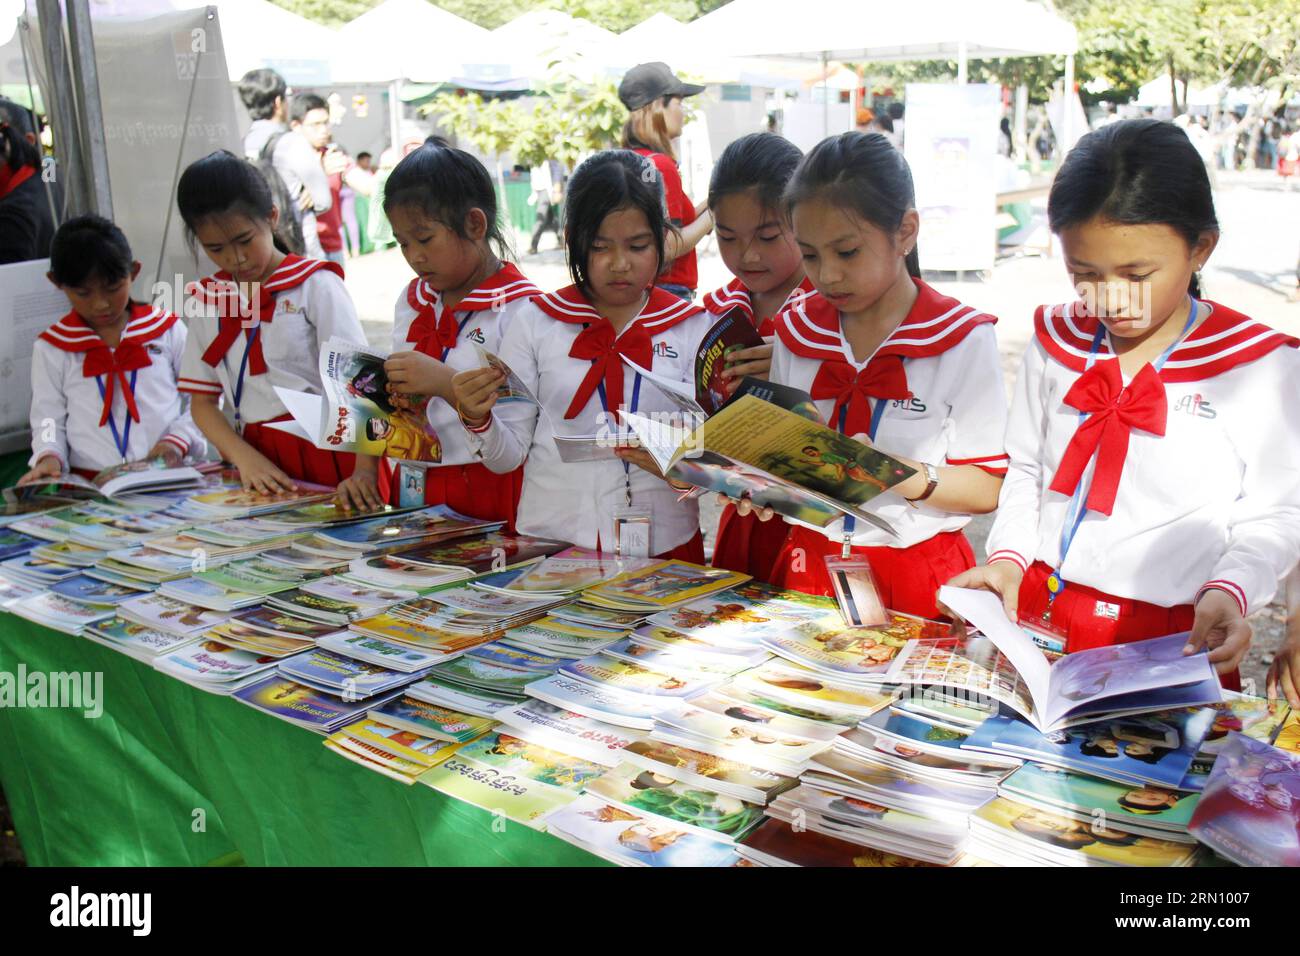 (141128) -- PHNOM PENH, 28 novembre 2014 -- gli studenti leggono libri durante una fiera del libro a Phnom Penh, Cambogia, il 28 novembre 2014. La terza Fiera Nazionale del Libro ha dato il via qui venerdì per incoraggiare le persone a leggere più libri, hanno detto i funzionari. ) CAMBOGIA-PHNOM PENH-STUDENT-BOOK FAIR Sovannara PUBLICATIONxNOTxINxCHN Phnom Penh Nov 28 2014 studenti leggono libri durante una Fiera del libro a Phnom Penh Cambogia IL 28 2014 novembre la terza Fiera Nazionale del libro ha dato IL via qui venerdì per incoraggiare le celebrità a leggere di più libri funzionari hanno detto Cambogia Phnom Penh Student Book Fair PUBLICATIONxNOTxINxCHN Foto Stock